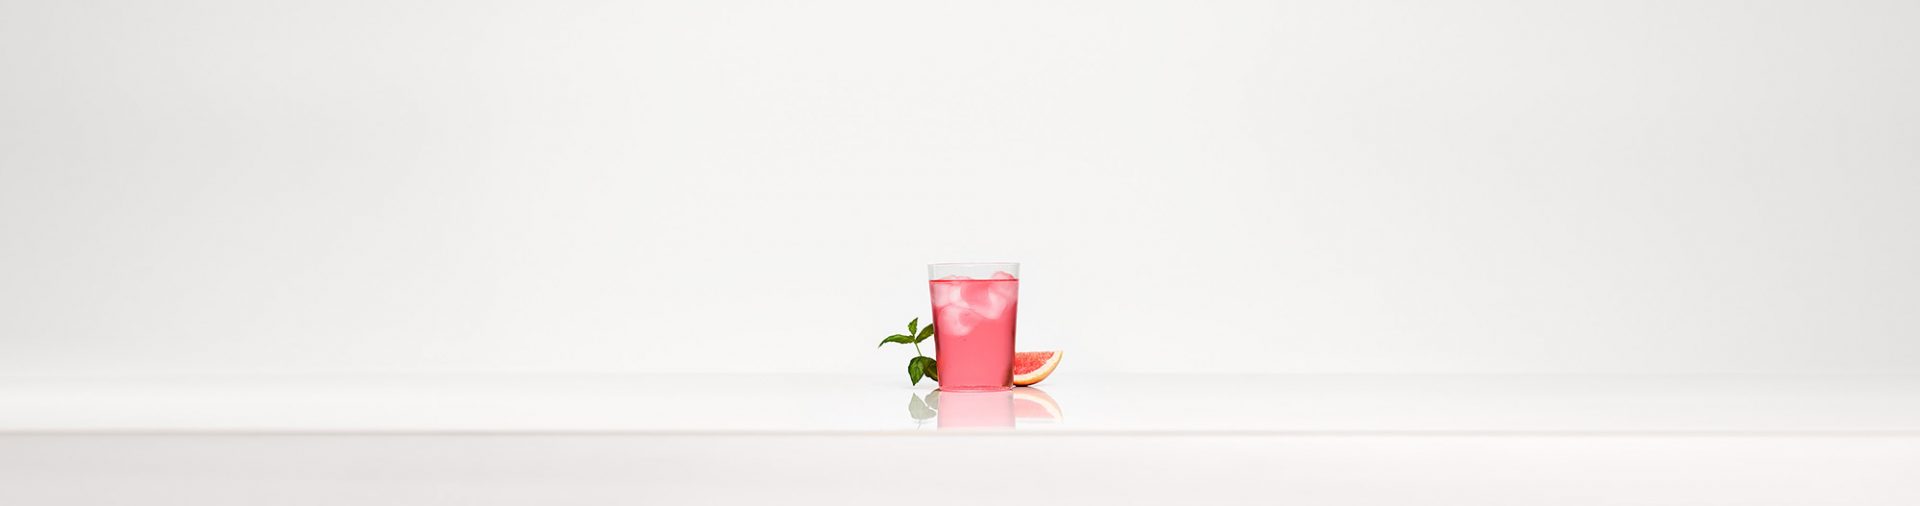 Un verre de boisson pétillante rose devant un fond blanc